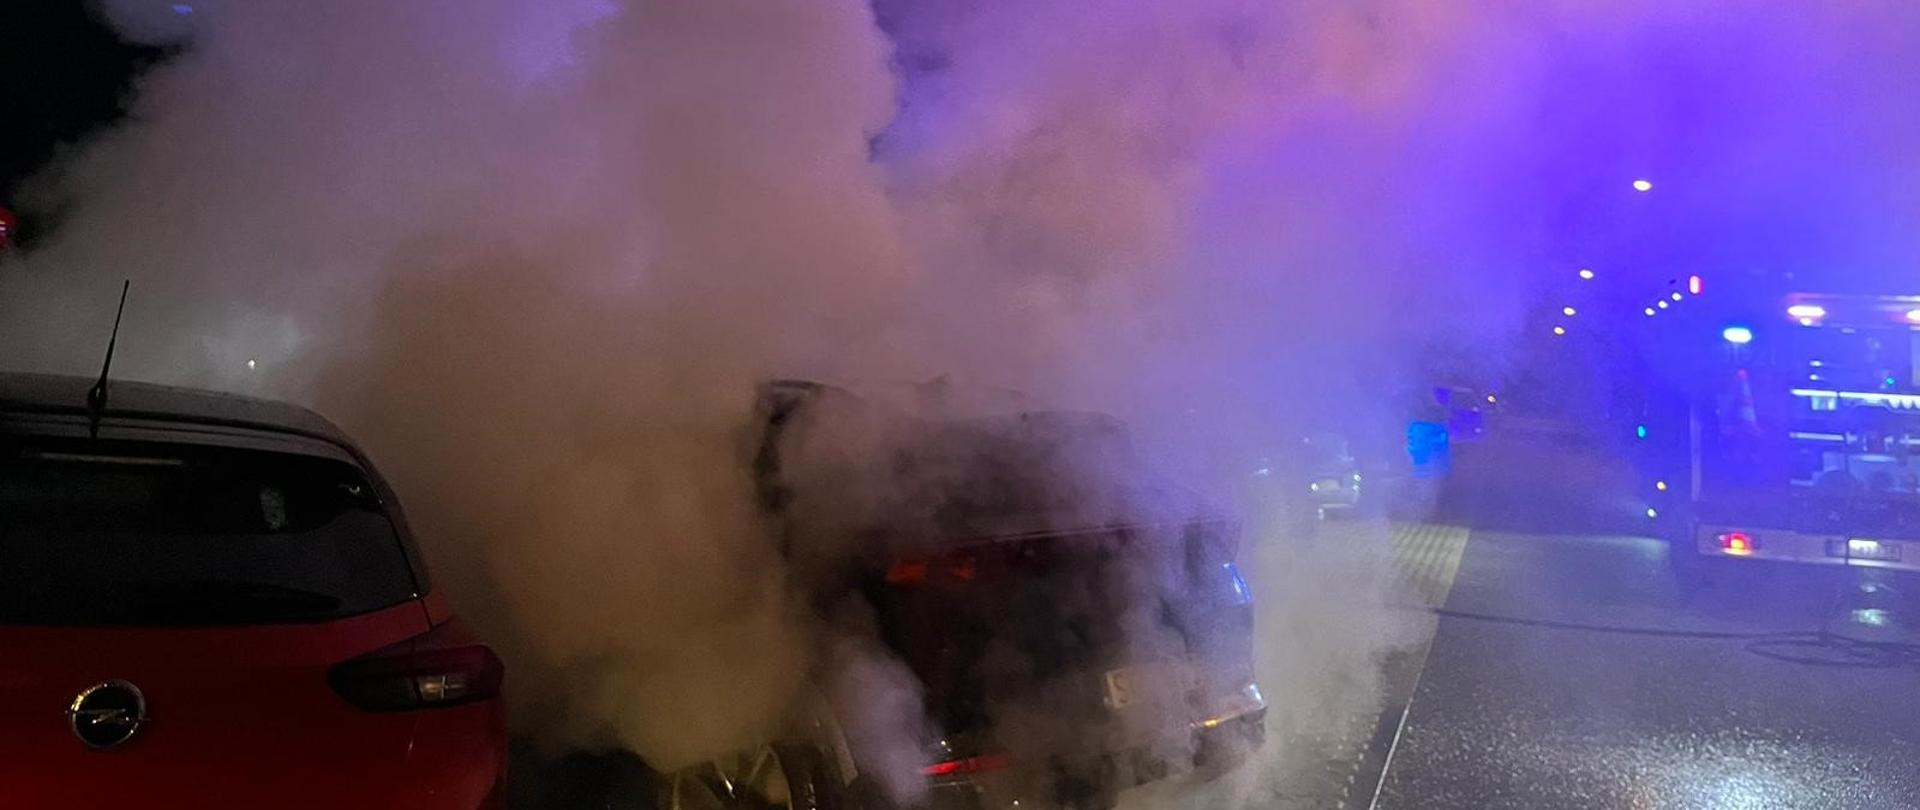 Dym wydobywający się z samochodu